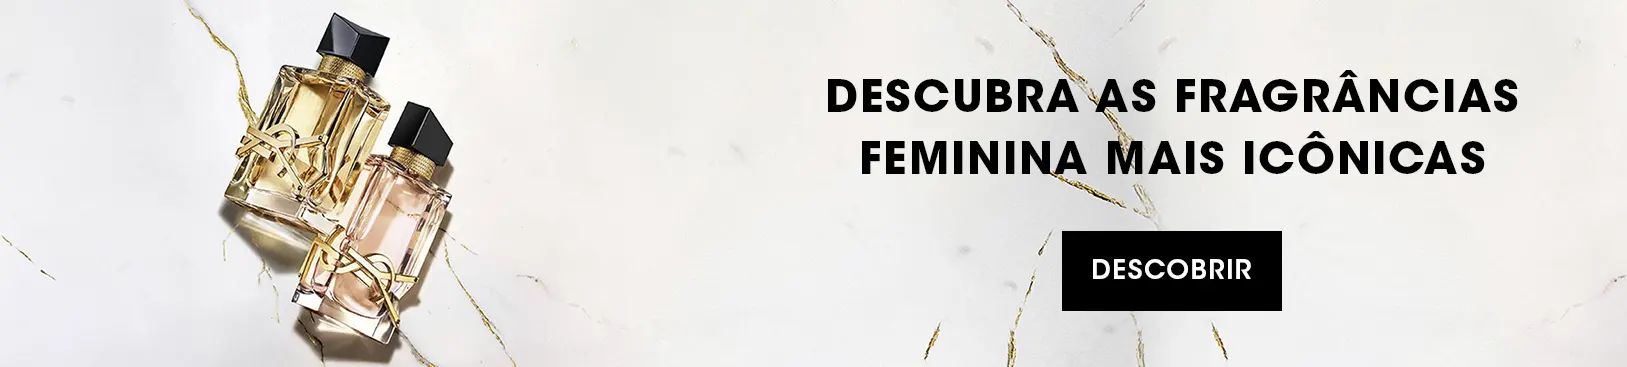 DESCUBRA AS FRAGRÂNCIAS FEMININA MAIS ICÔNICAS